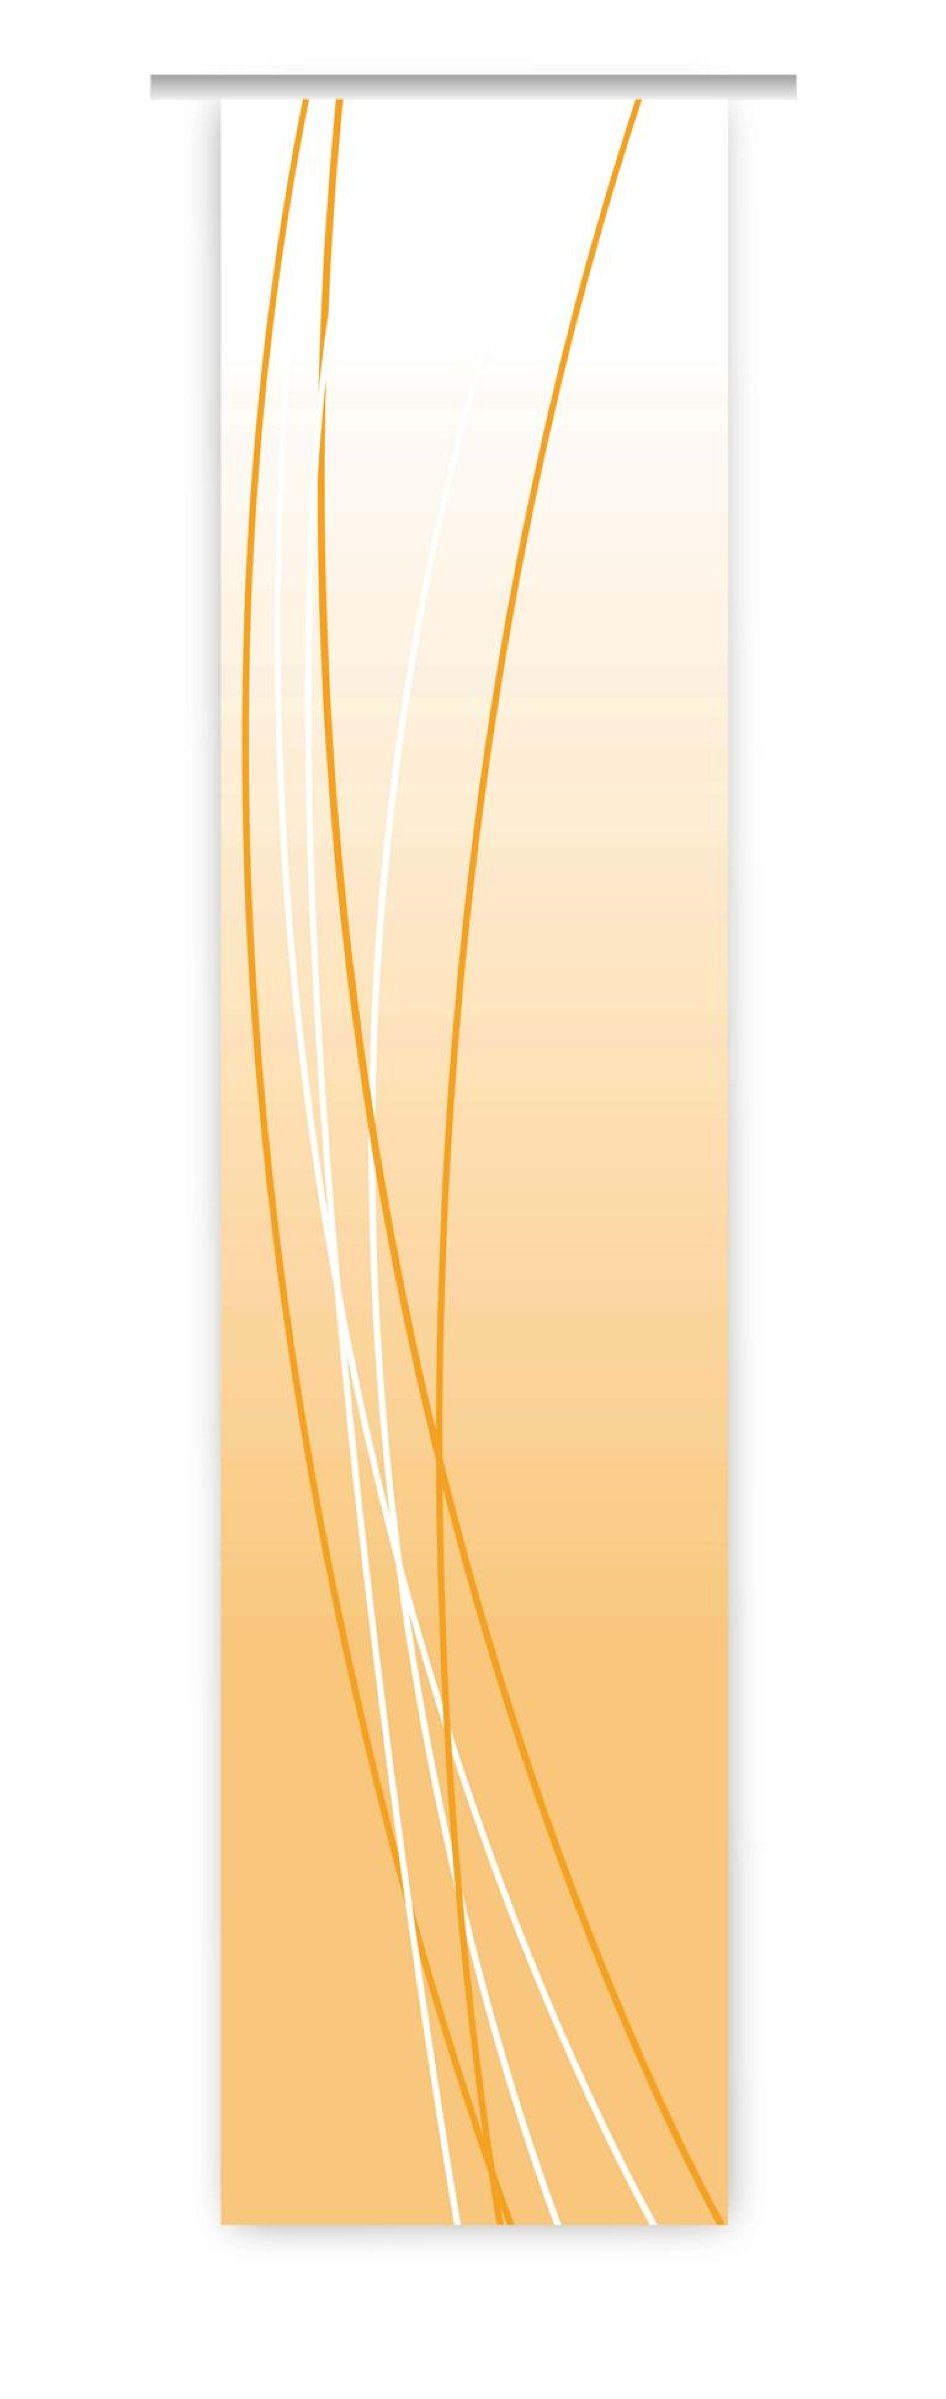 Schiebegardine Linea orange up dark Schiebevorhang - HxB 260x60 cm -  B-line, gardinen-for-life